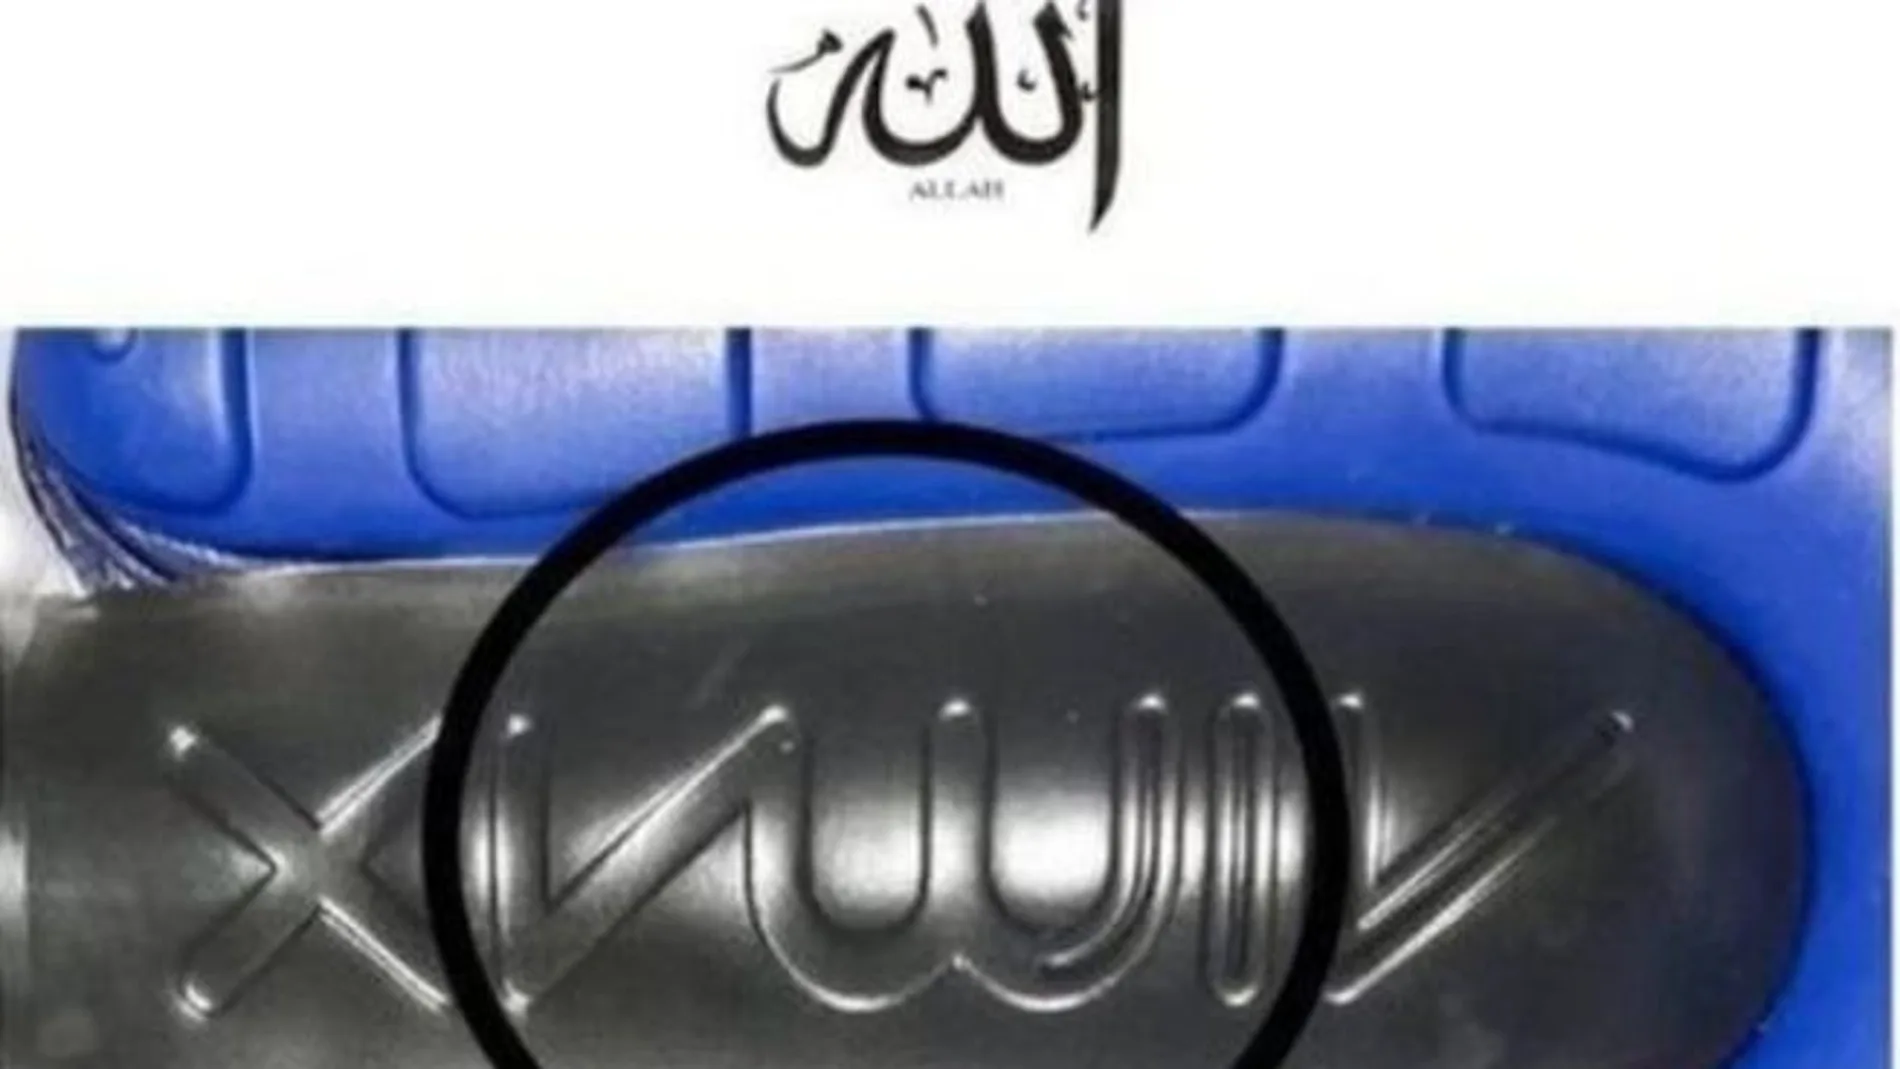 La similitud del logo con el nombre de Alá en árabe ha desatado la polémica.